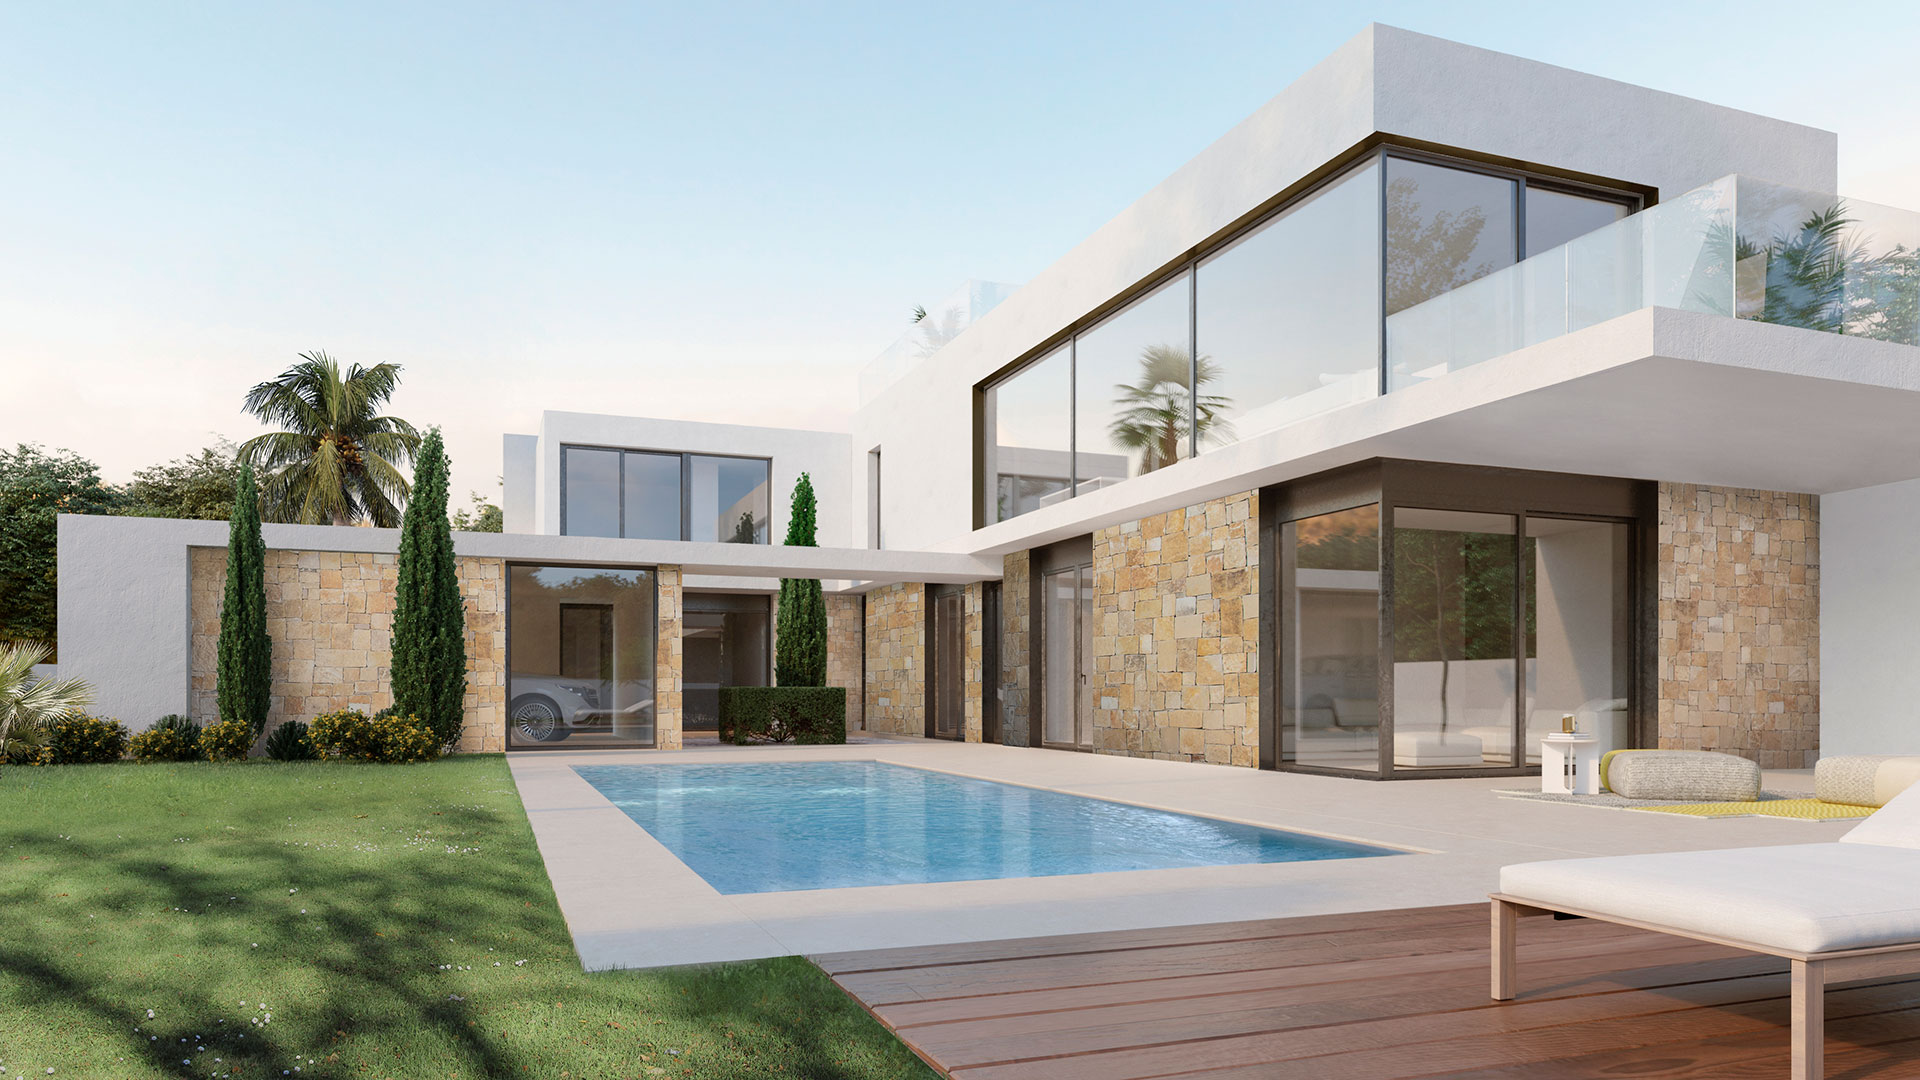 Casa modular moderna con piscina